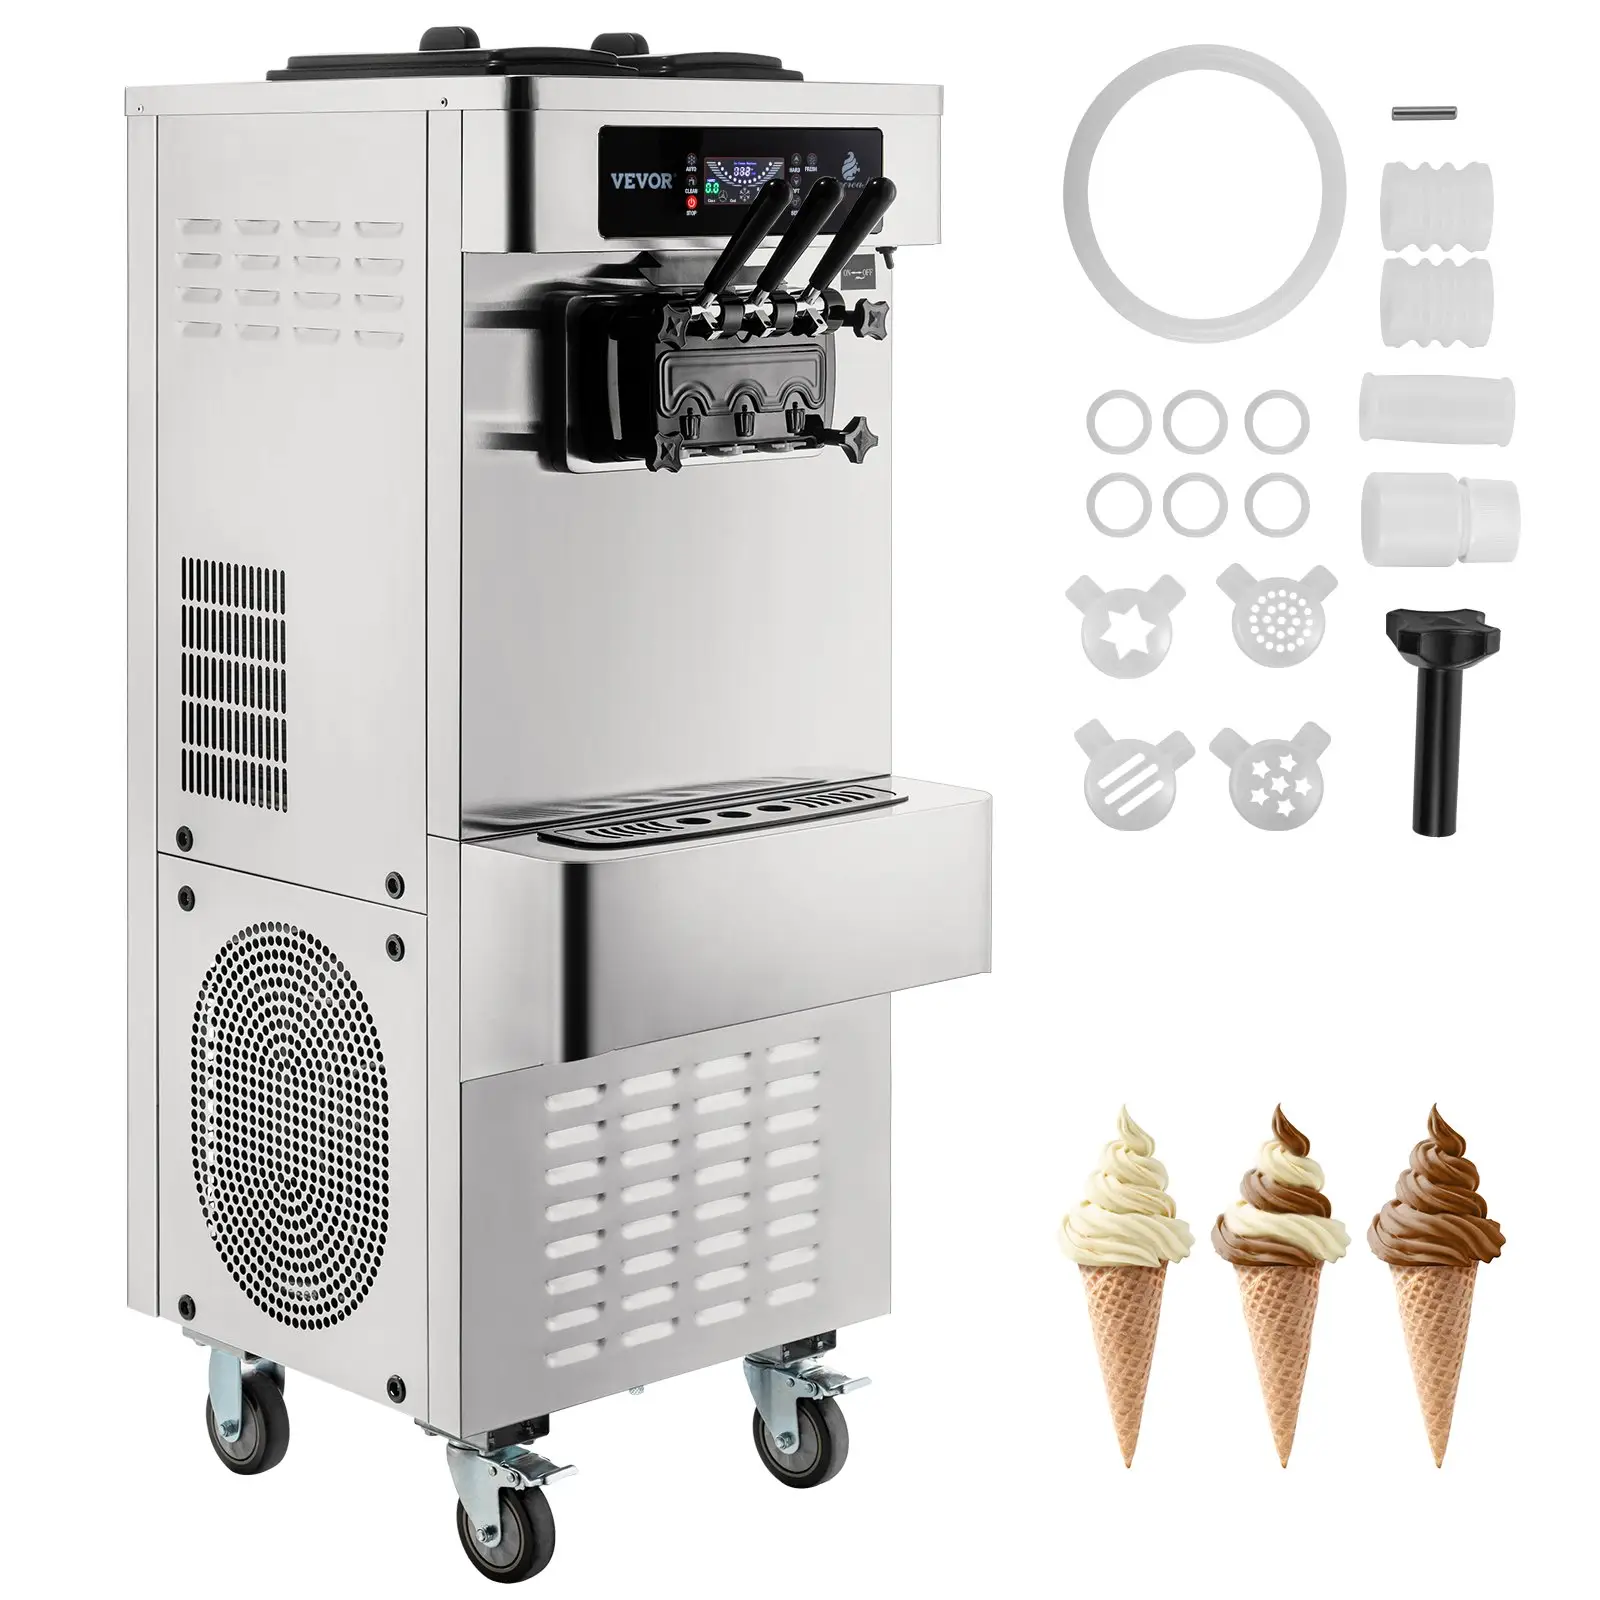 SIHAO-máquina comercial de helados 2 + 1, máquina de servicio suave de 2450W, fabricante de Yogurt helado para aperitivos, Bar y cafetería